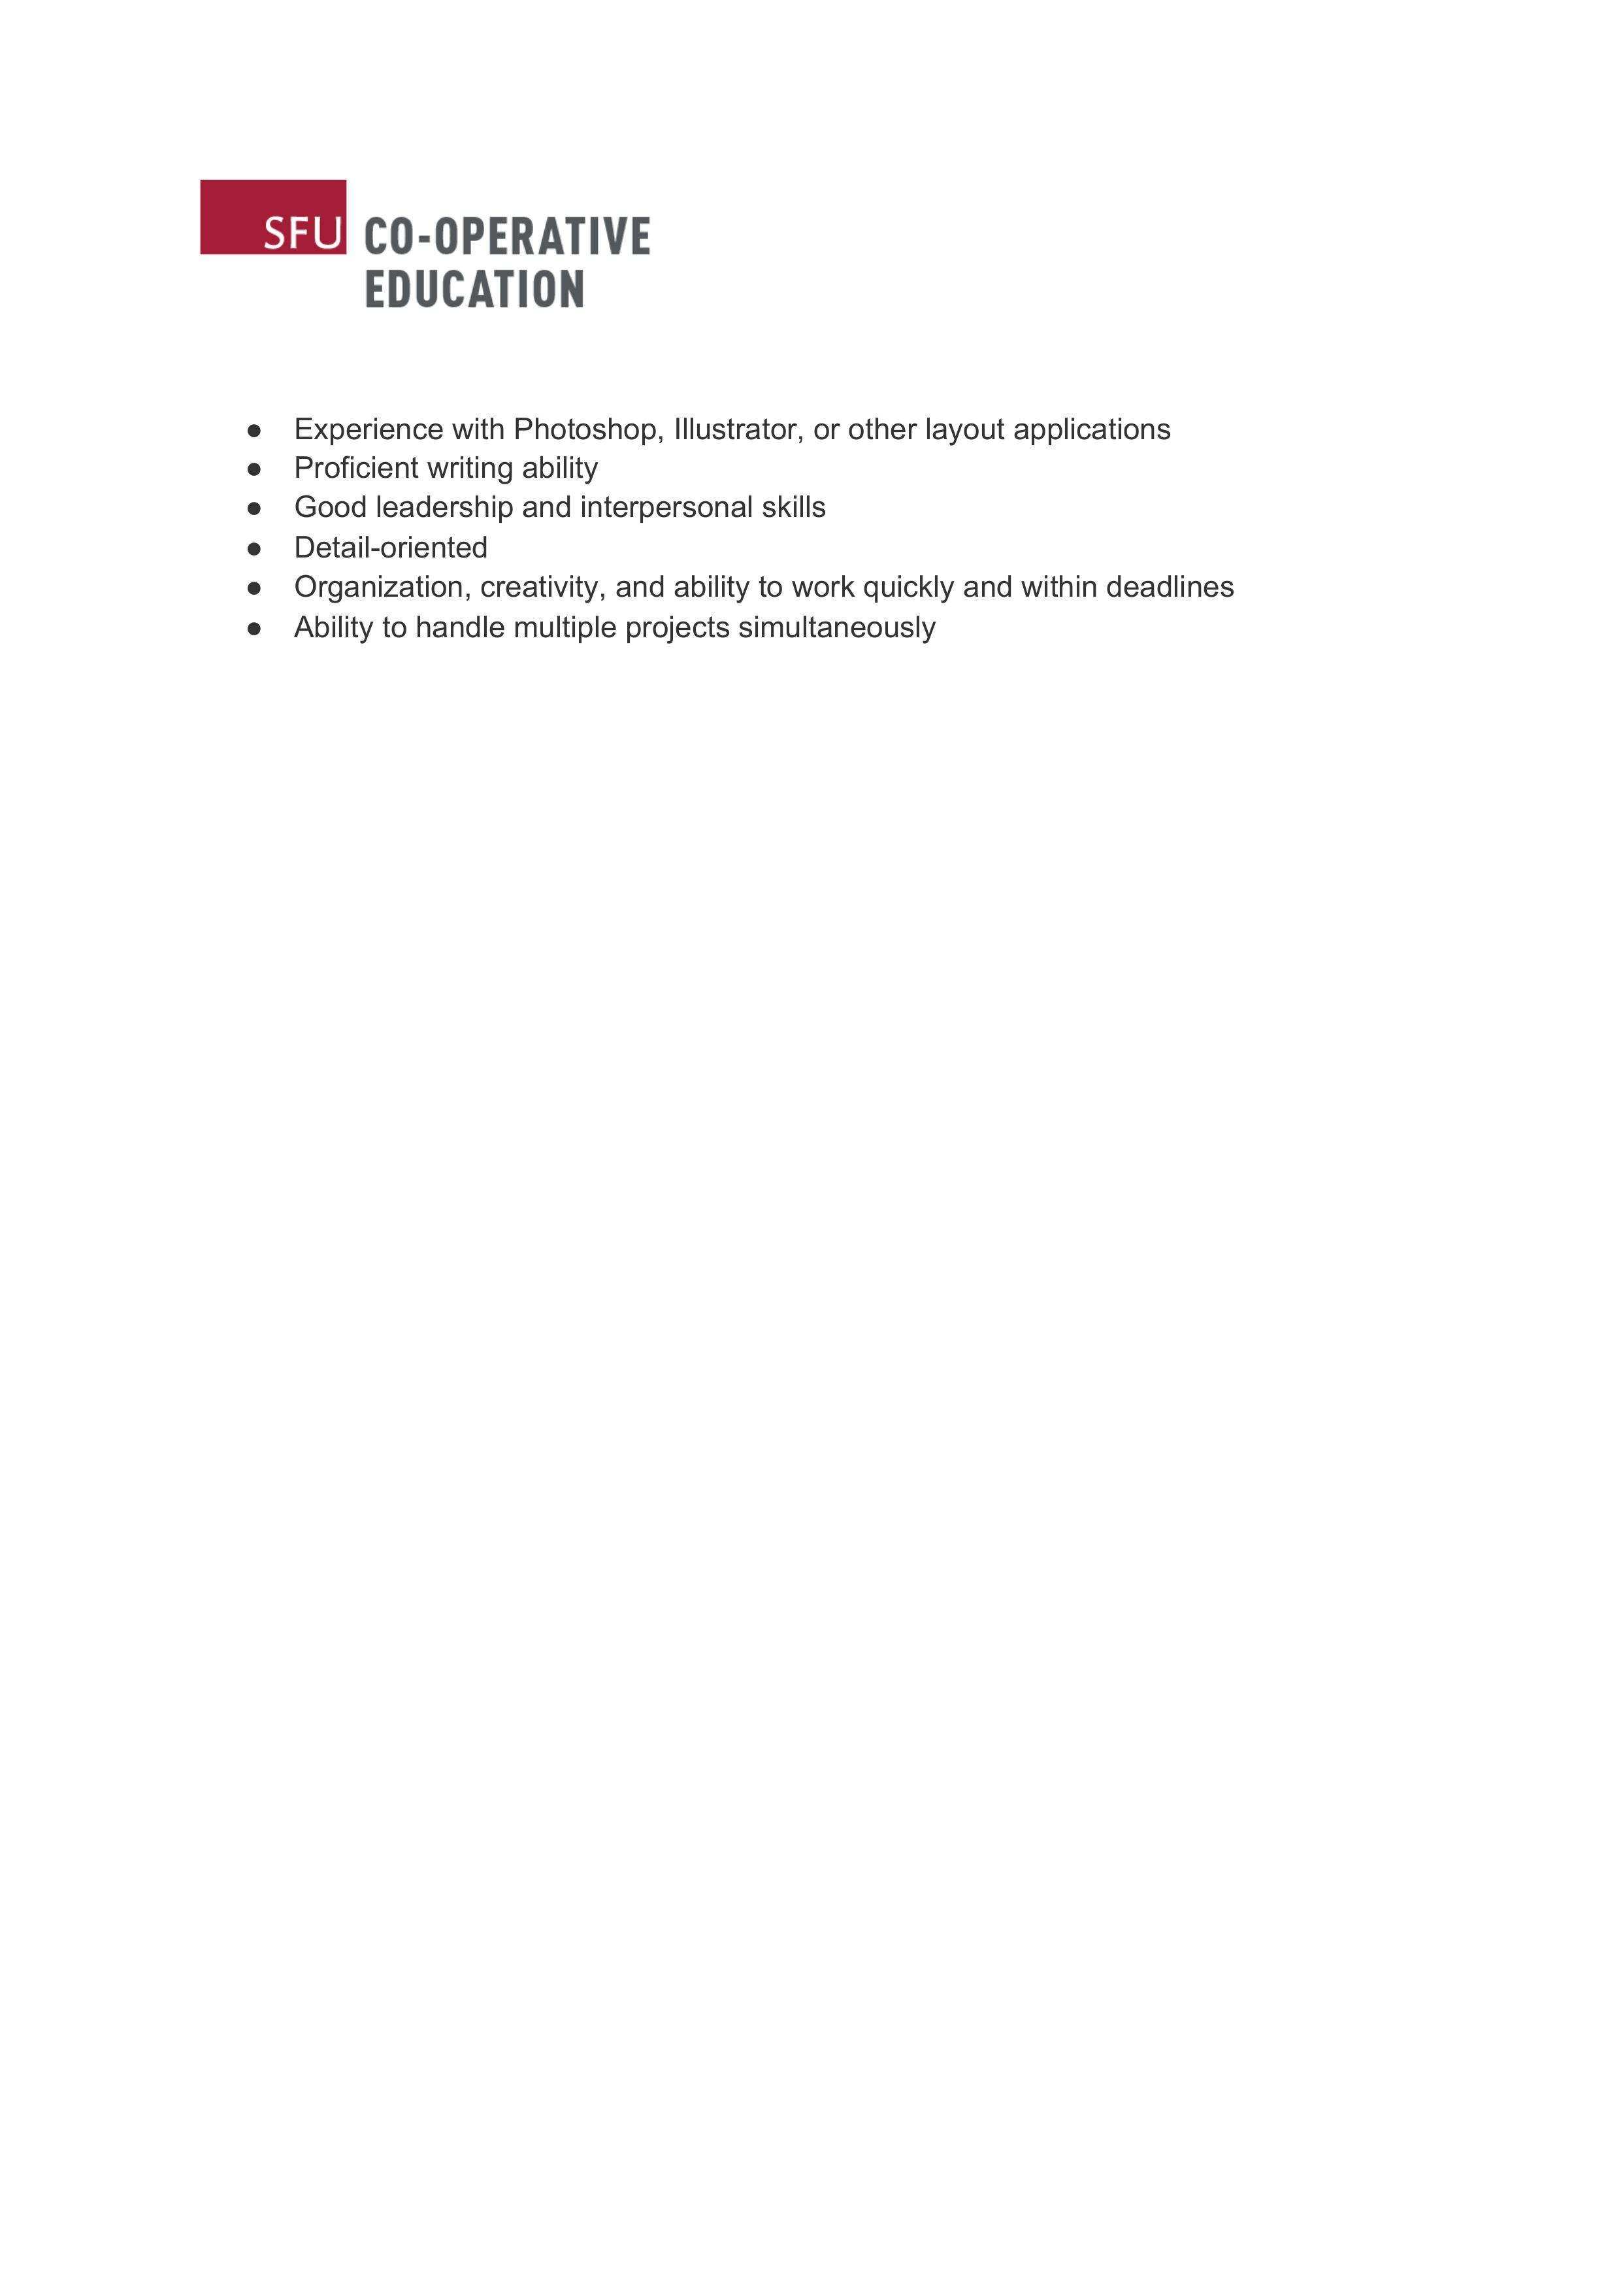 Online Communications Assistant job description (Page 2)